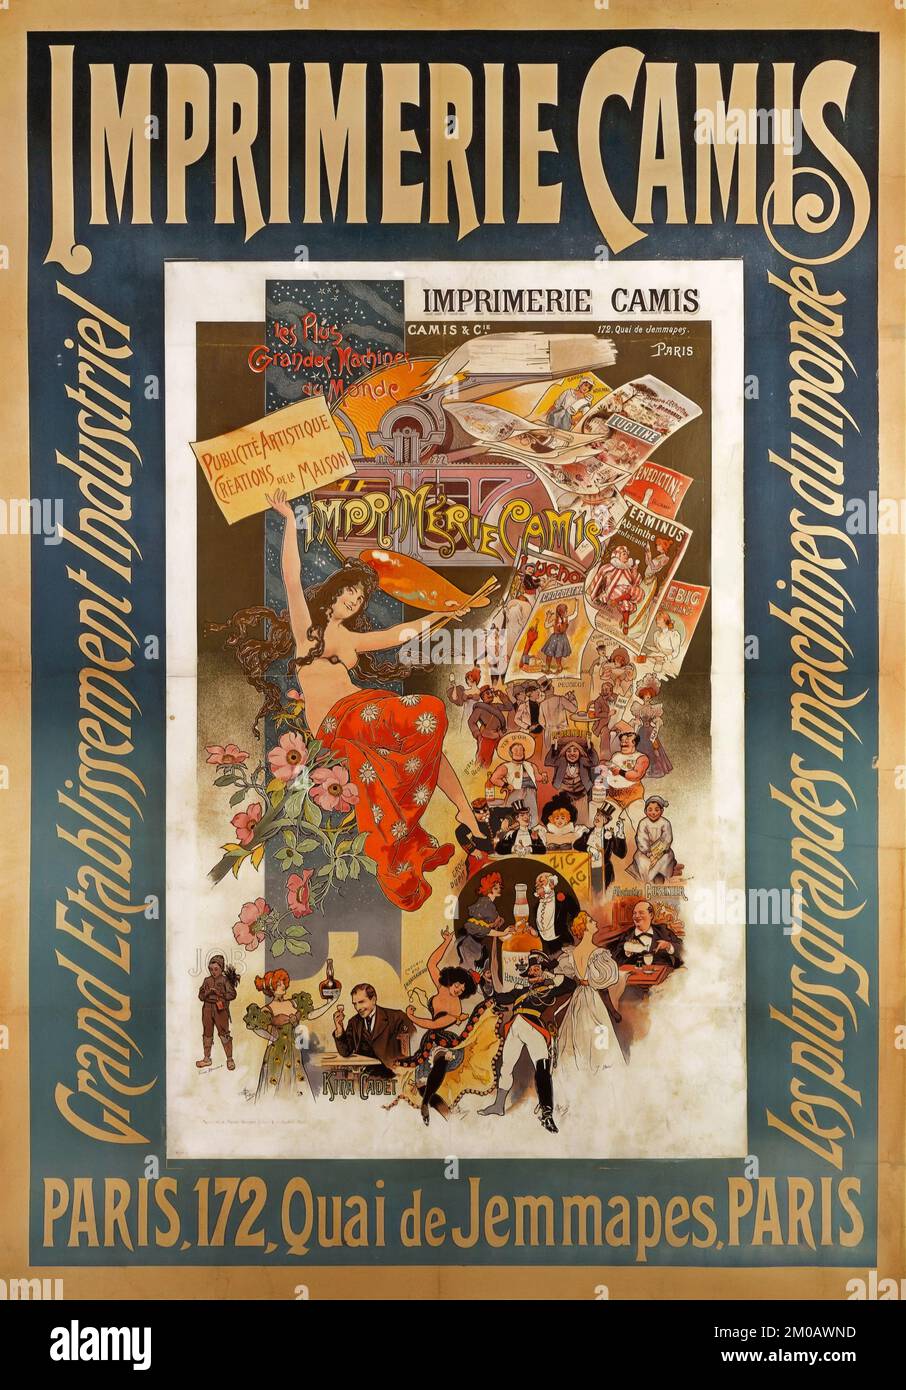 Imprimerie Camis - Grand établissement industriel - affiche ancienne française (1880-1900) Banque D'Images